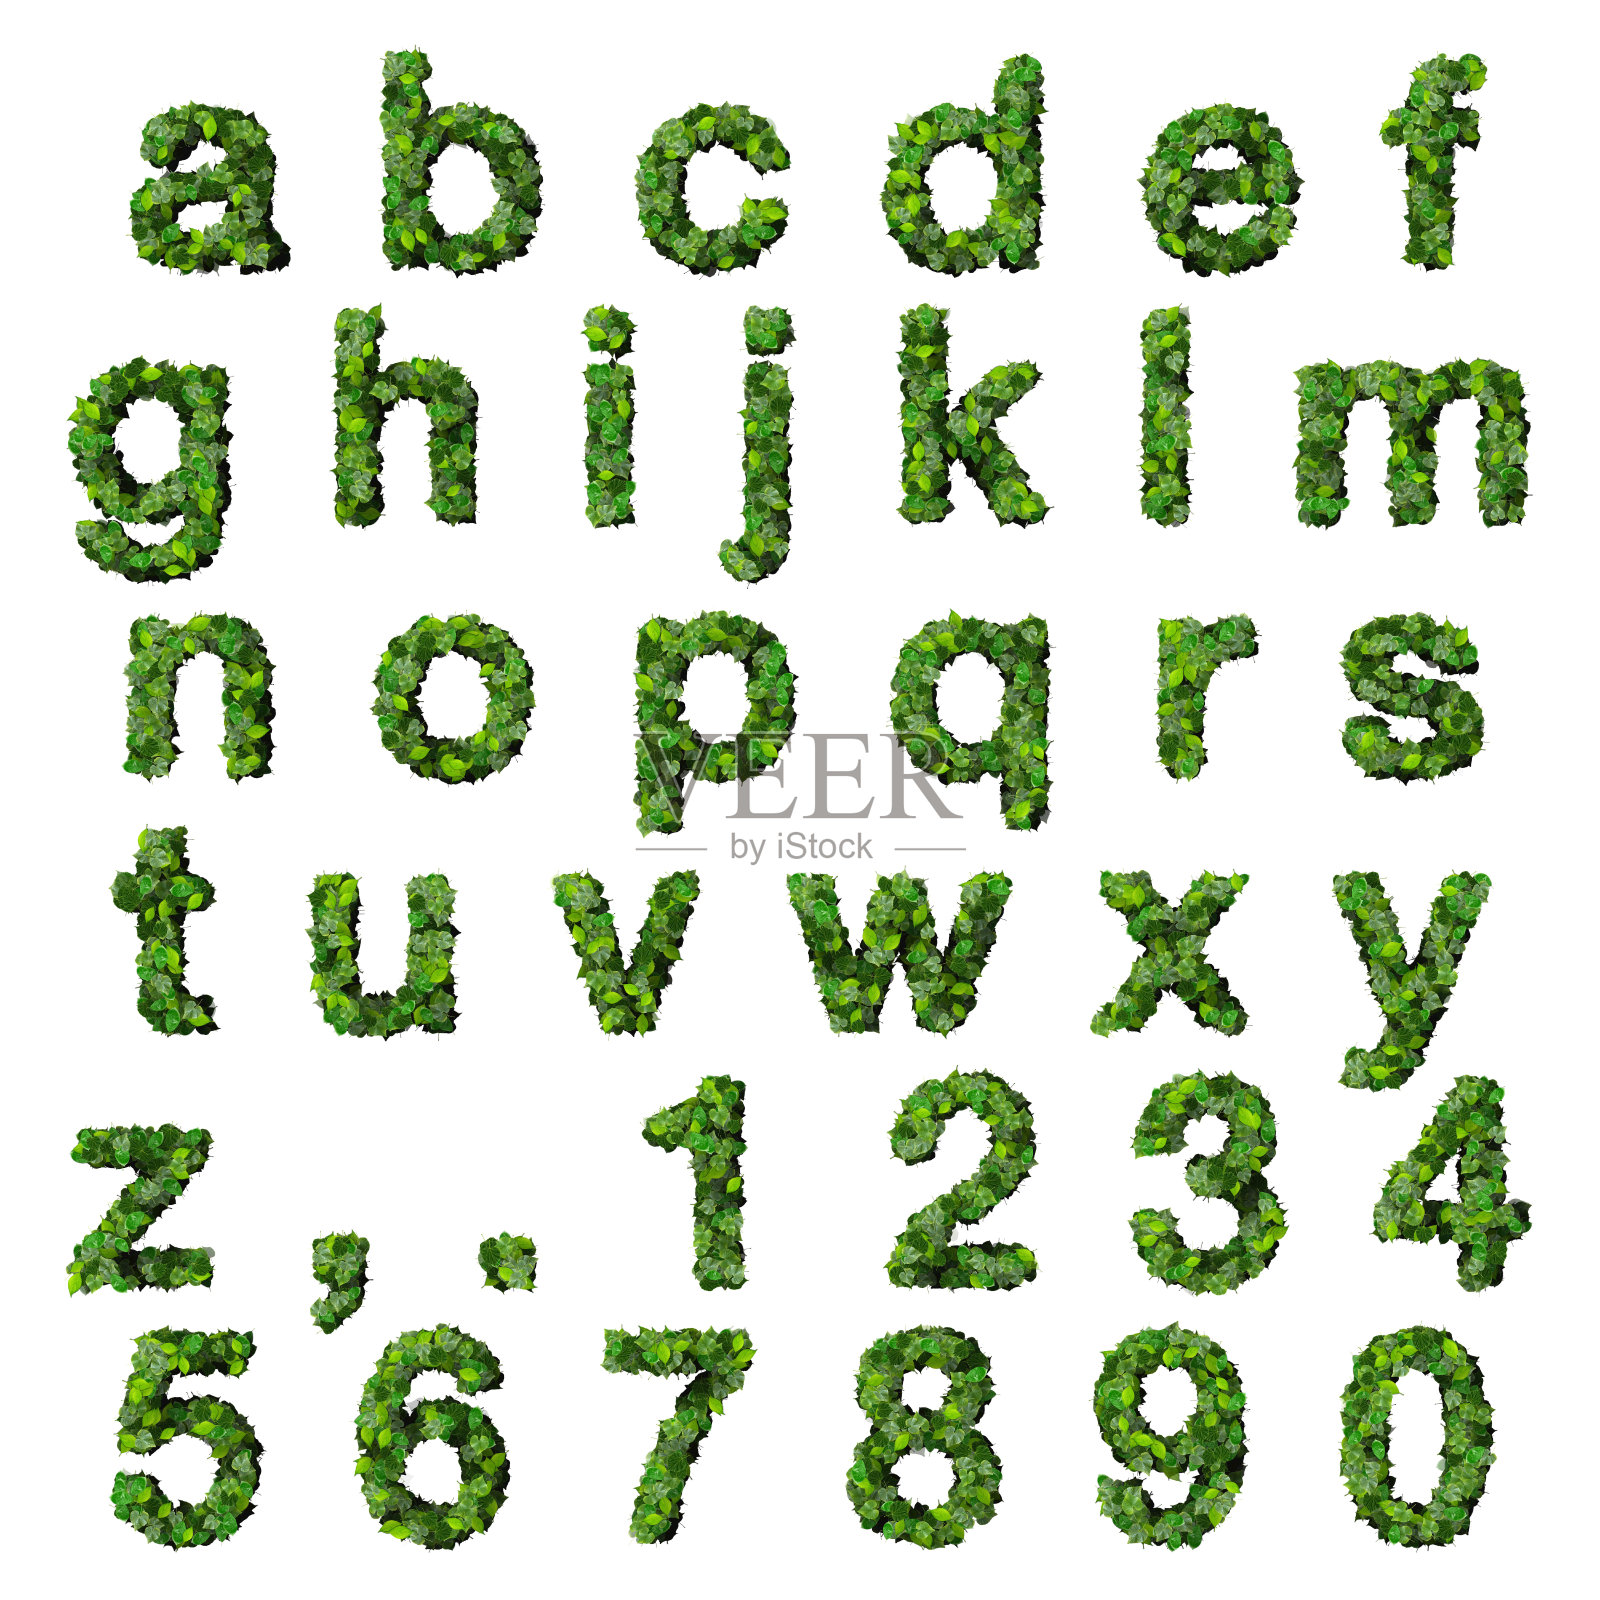 由绿叶构成的数字字母照片摄影图片